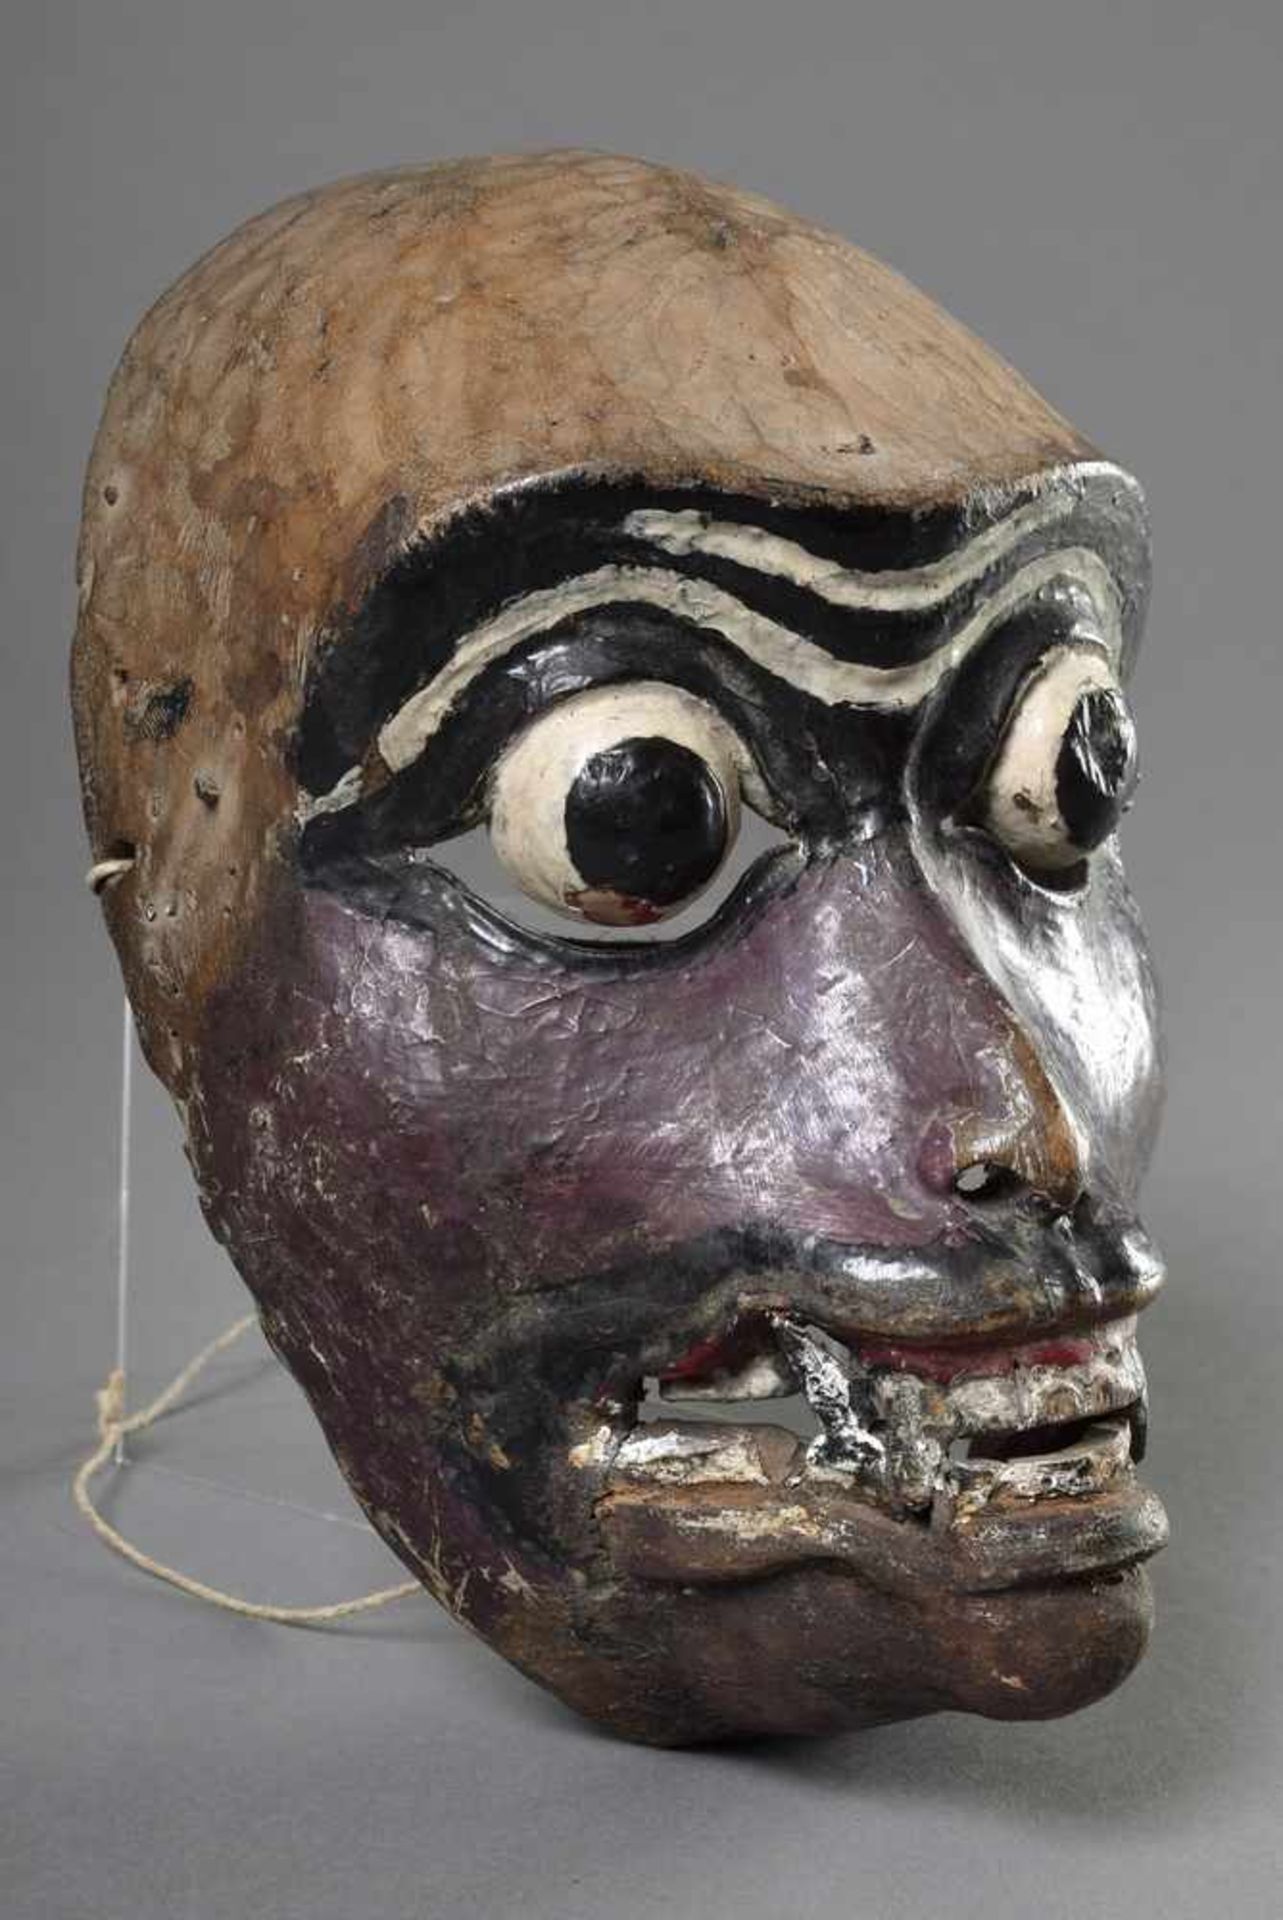 Maske "Affe", Holz, farbig gefasst, Lombok, Indonesien, 19x13cm, etw. ber./best., erworben 1977 in - Bild 2 aus 6